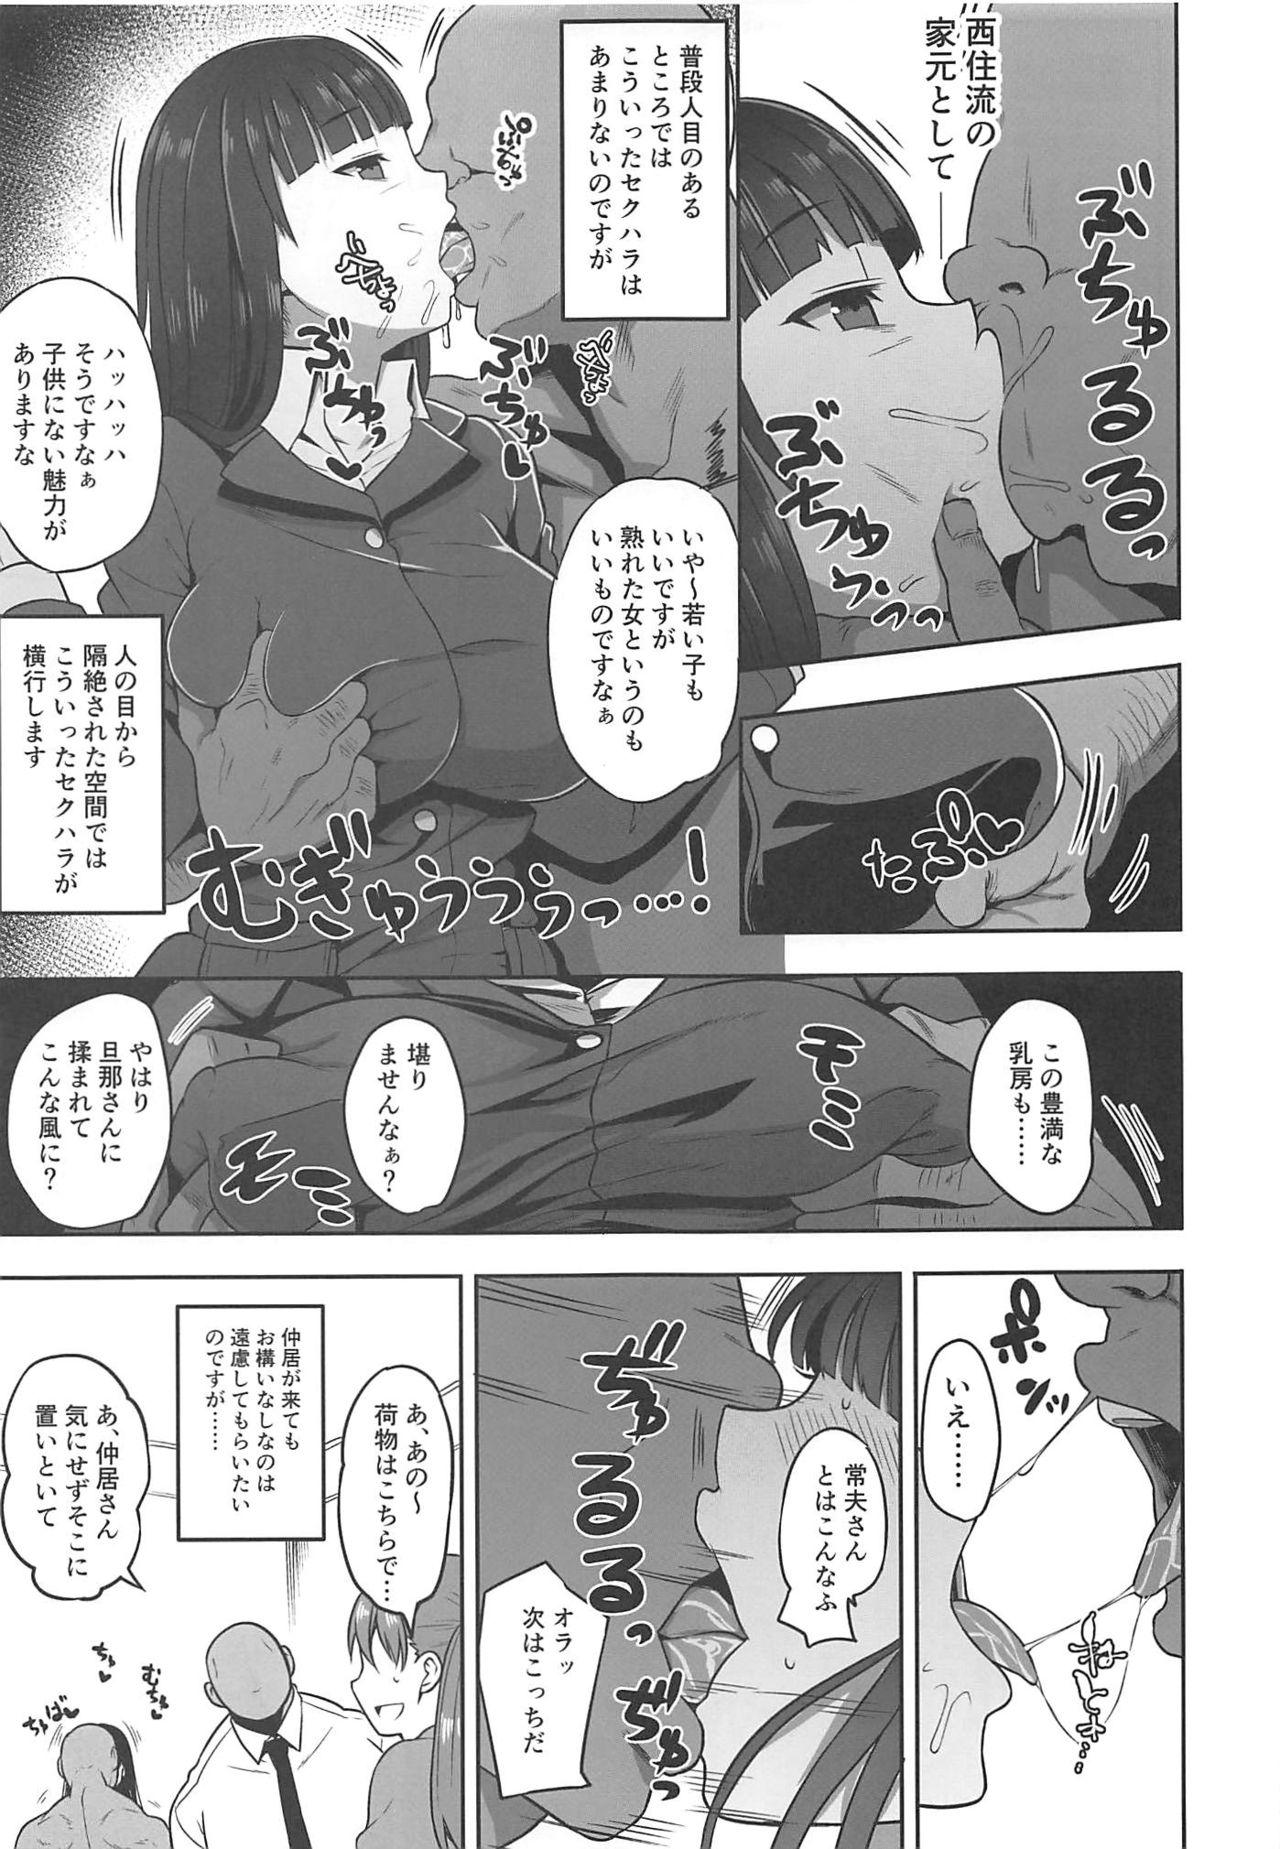 Uncut Nishizumi-ryuu Uwakidou 2 - Girls und panzer Interacial - Page 6